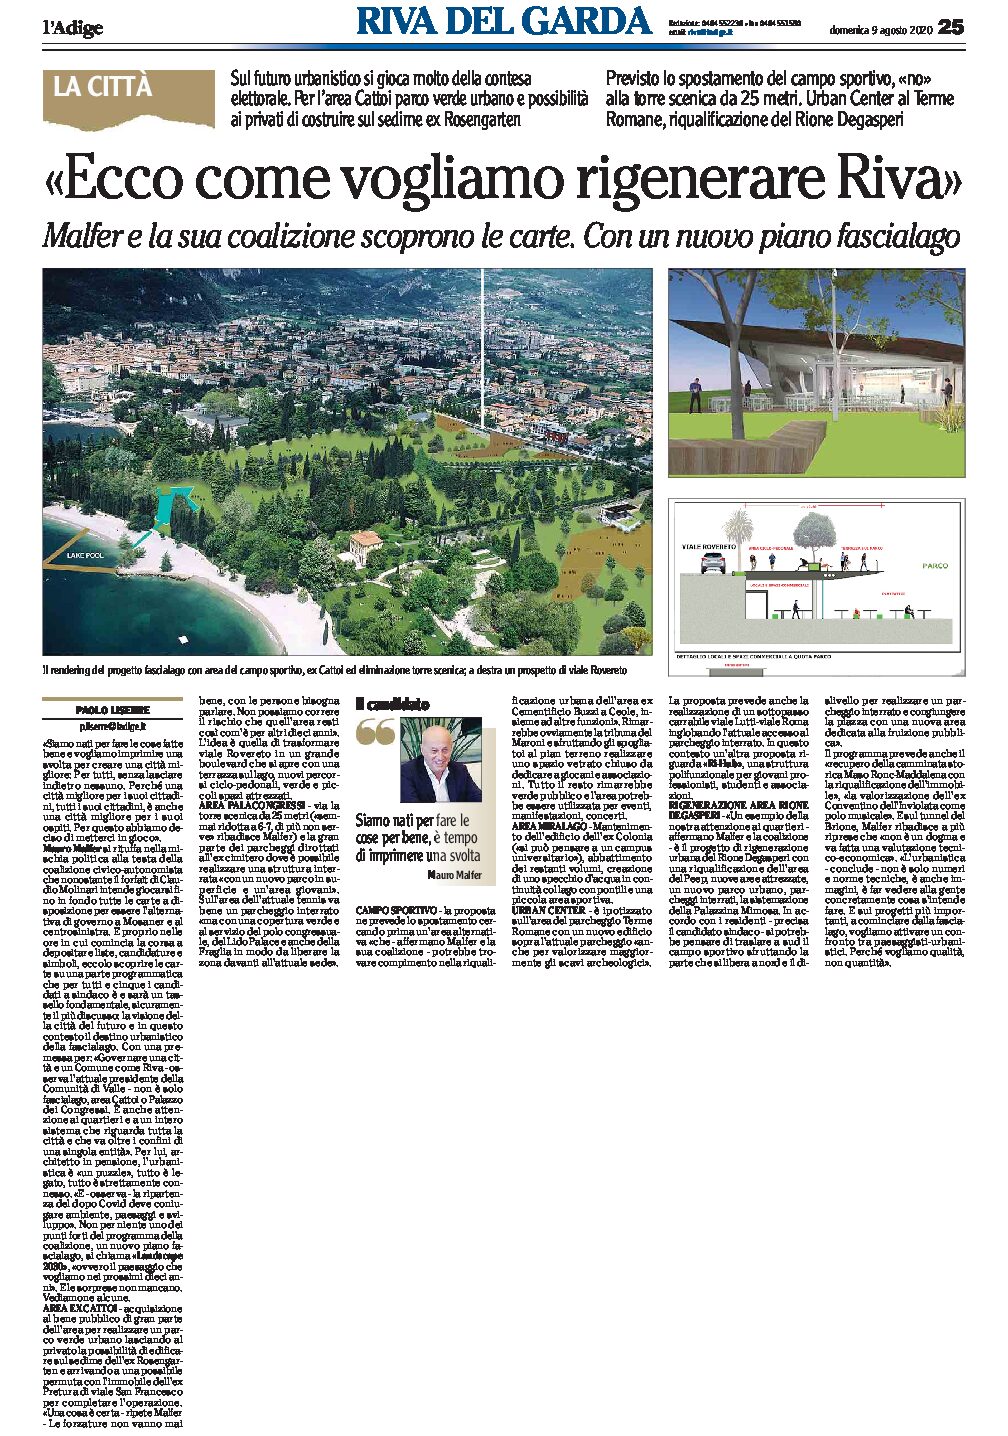 Malfer, Riva: vogliamo rigenerarla con un nuovo piano fascia lago